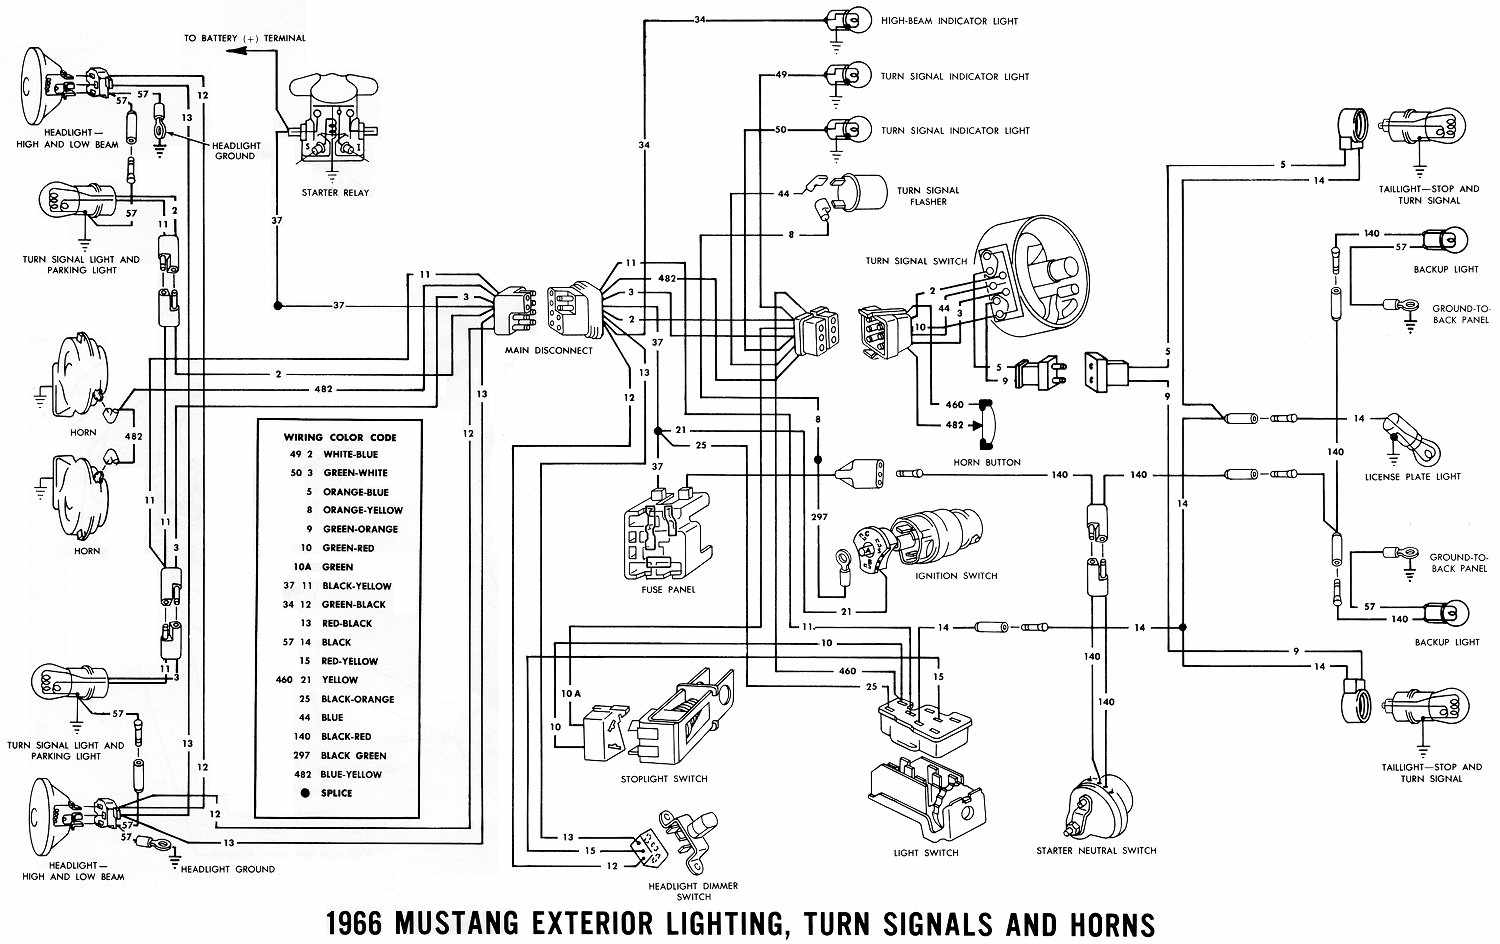 2003 Ford windstar turn signal wiring diagram #7